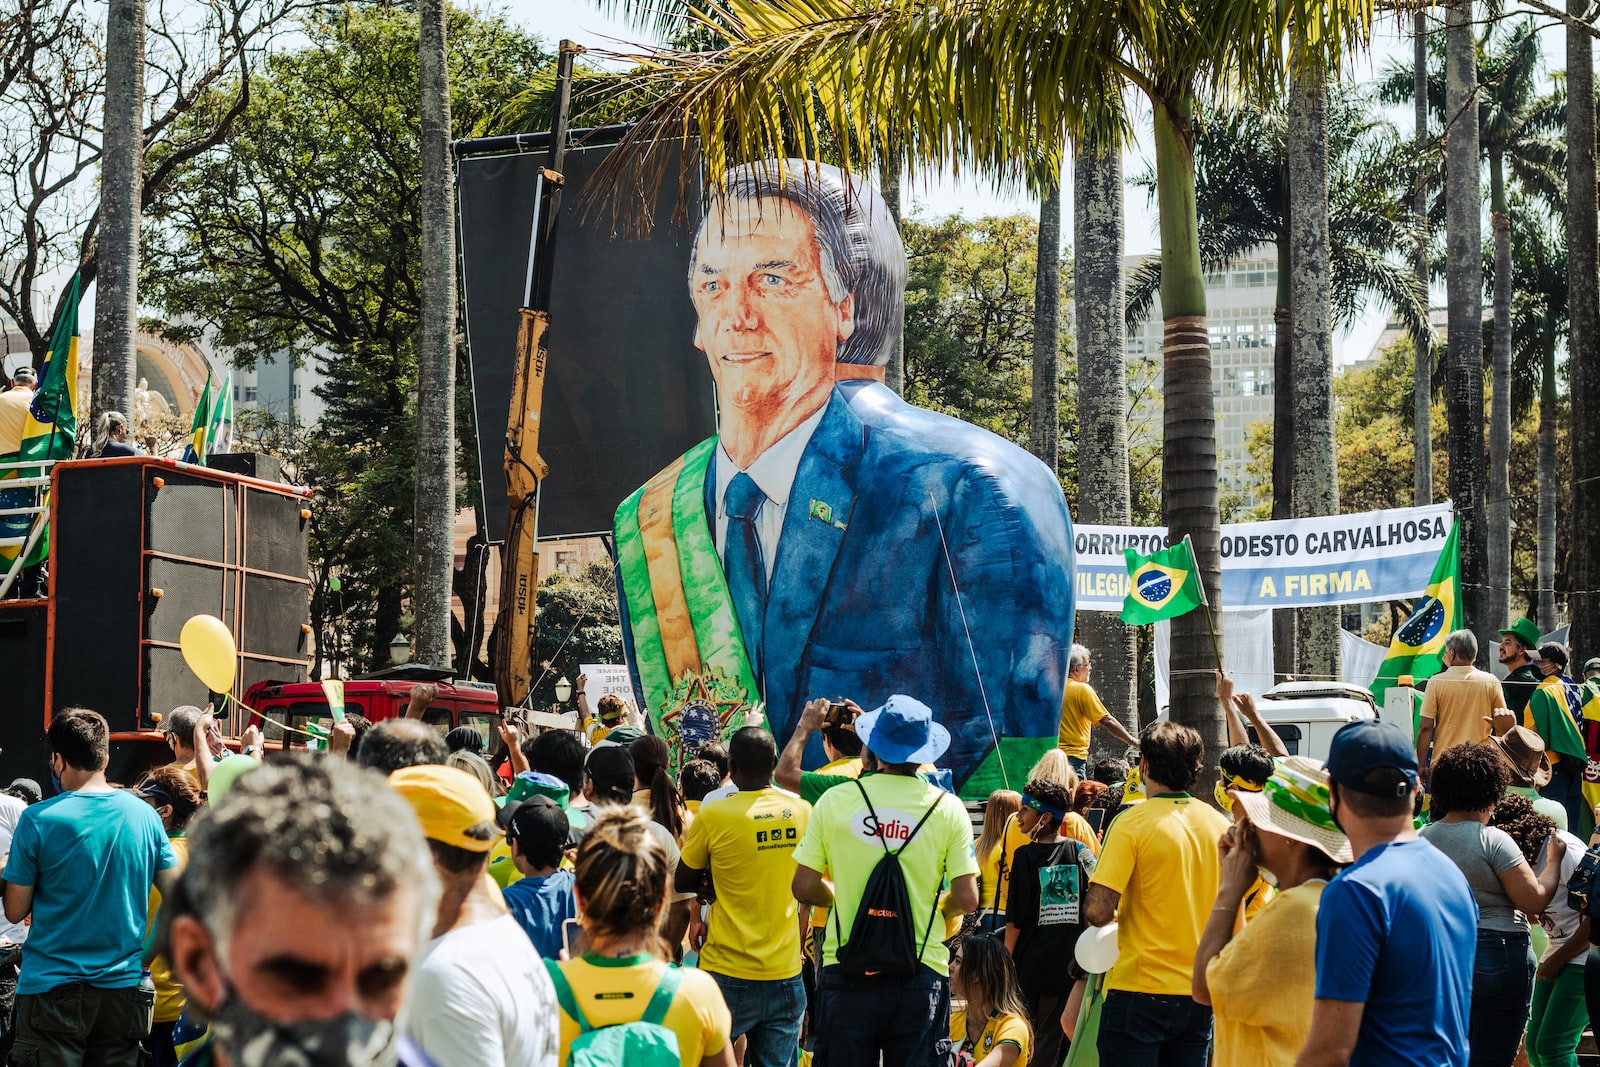 Jair Bolsonaro improvise discours acerbe Londres déplacement Plare